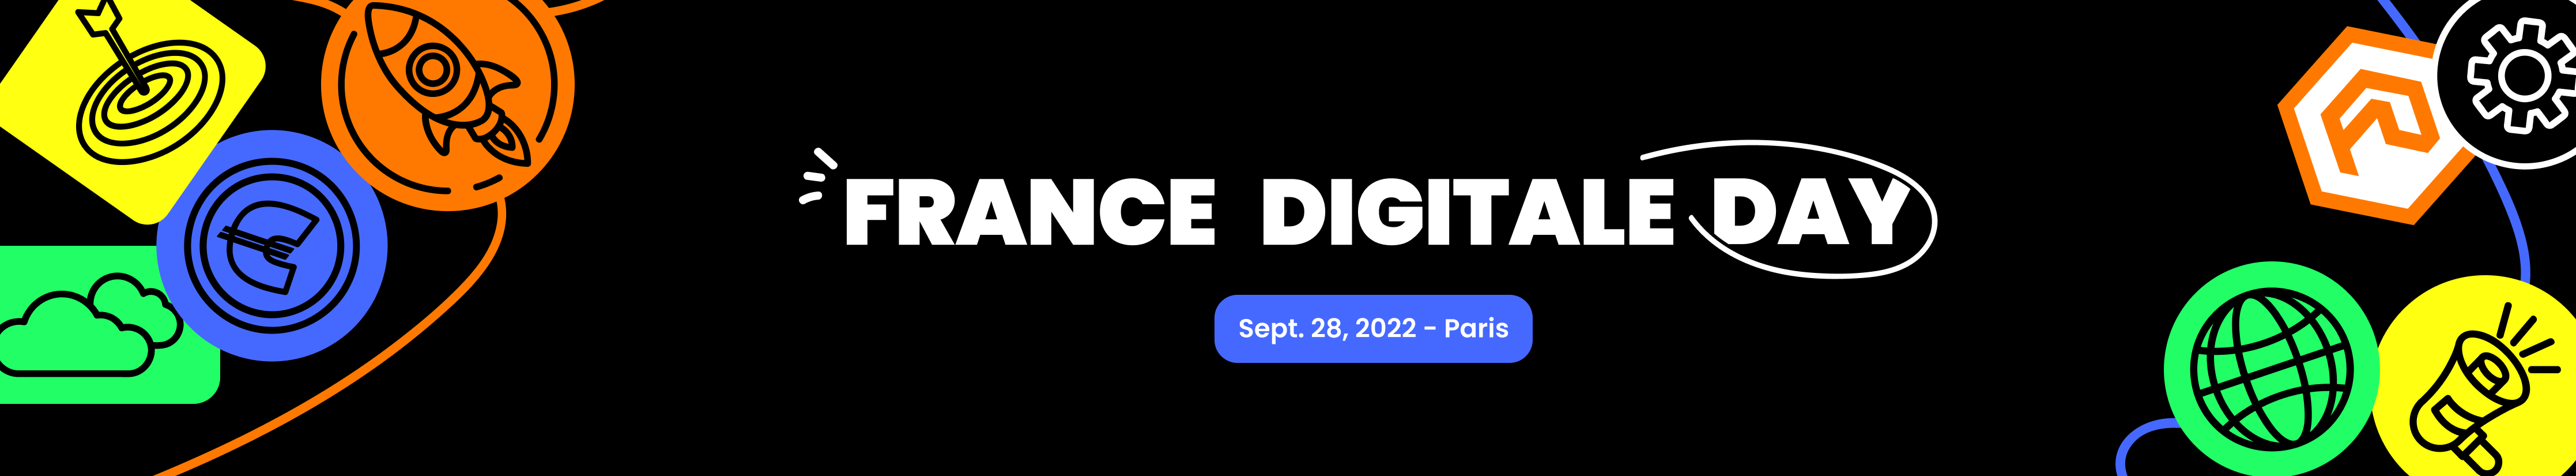 France Digital Day 2022